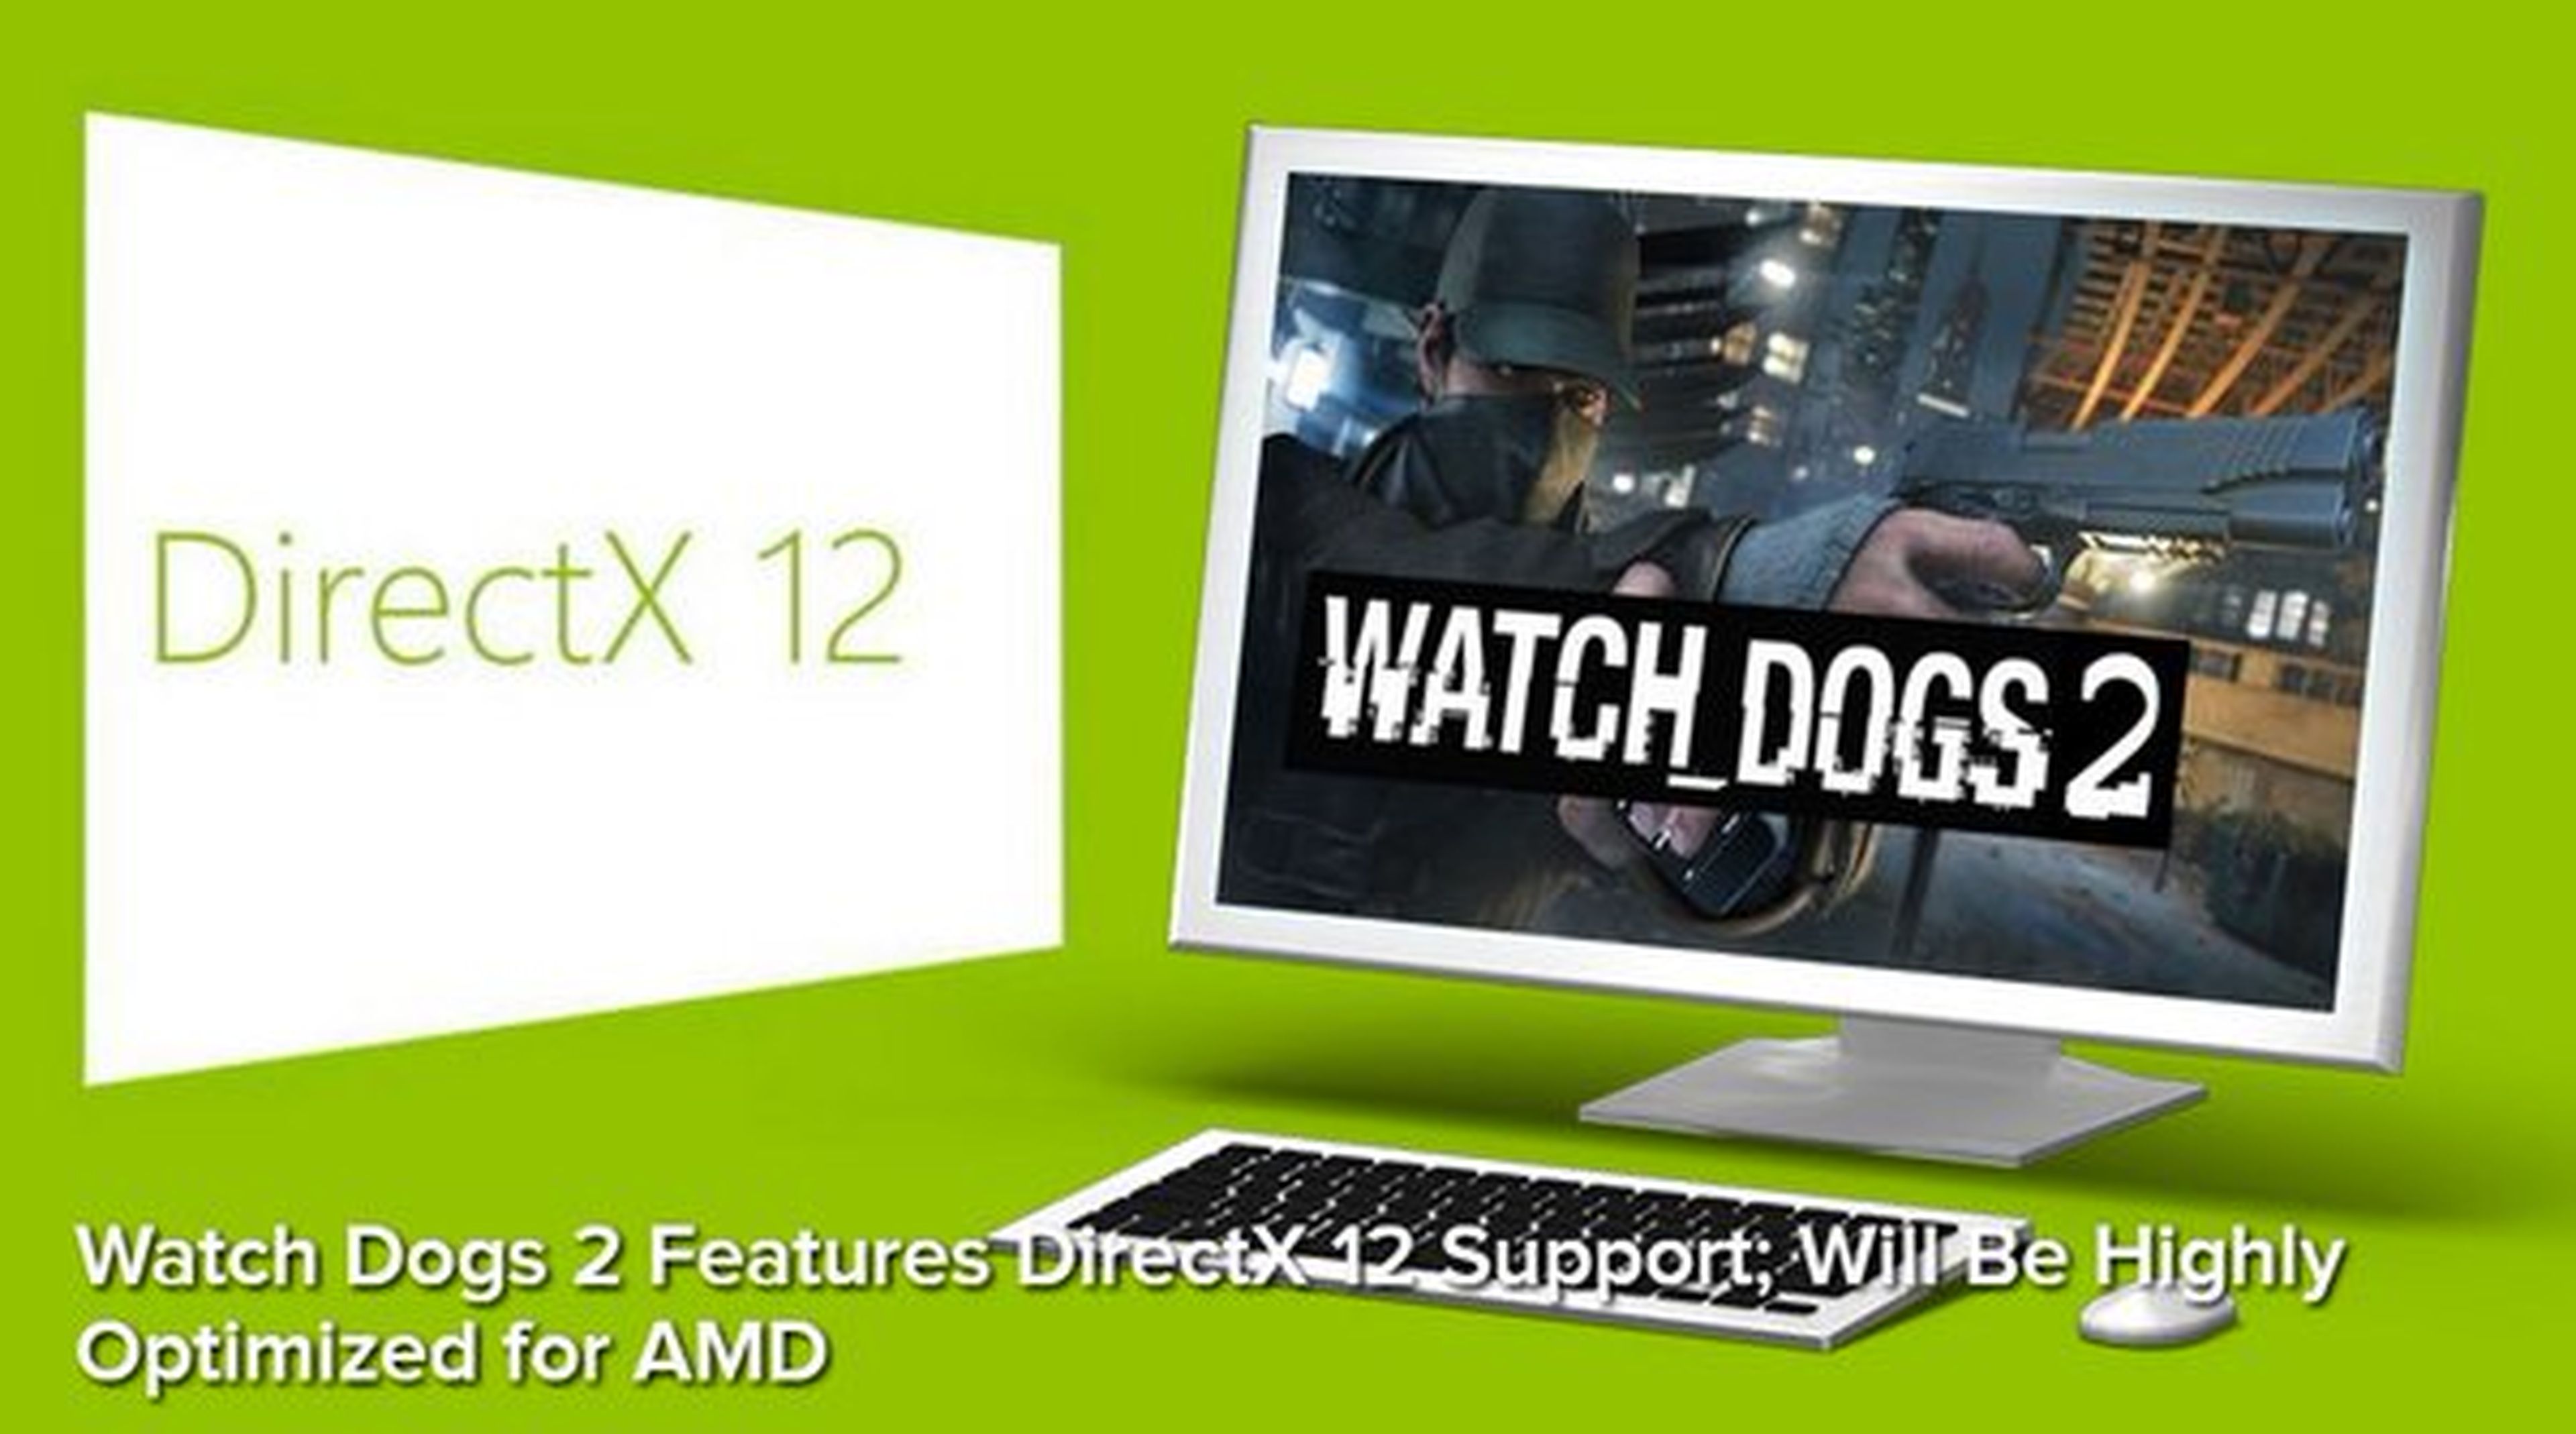 Watch Dogs 2 - Soporte para DirectX 12 y optimizado para AMD